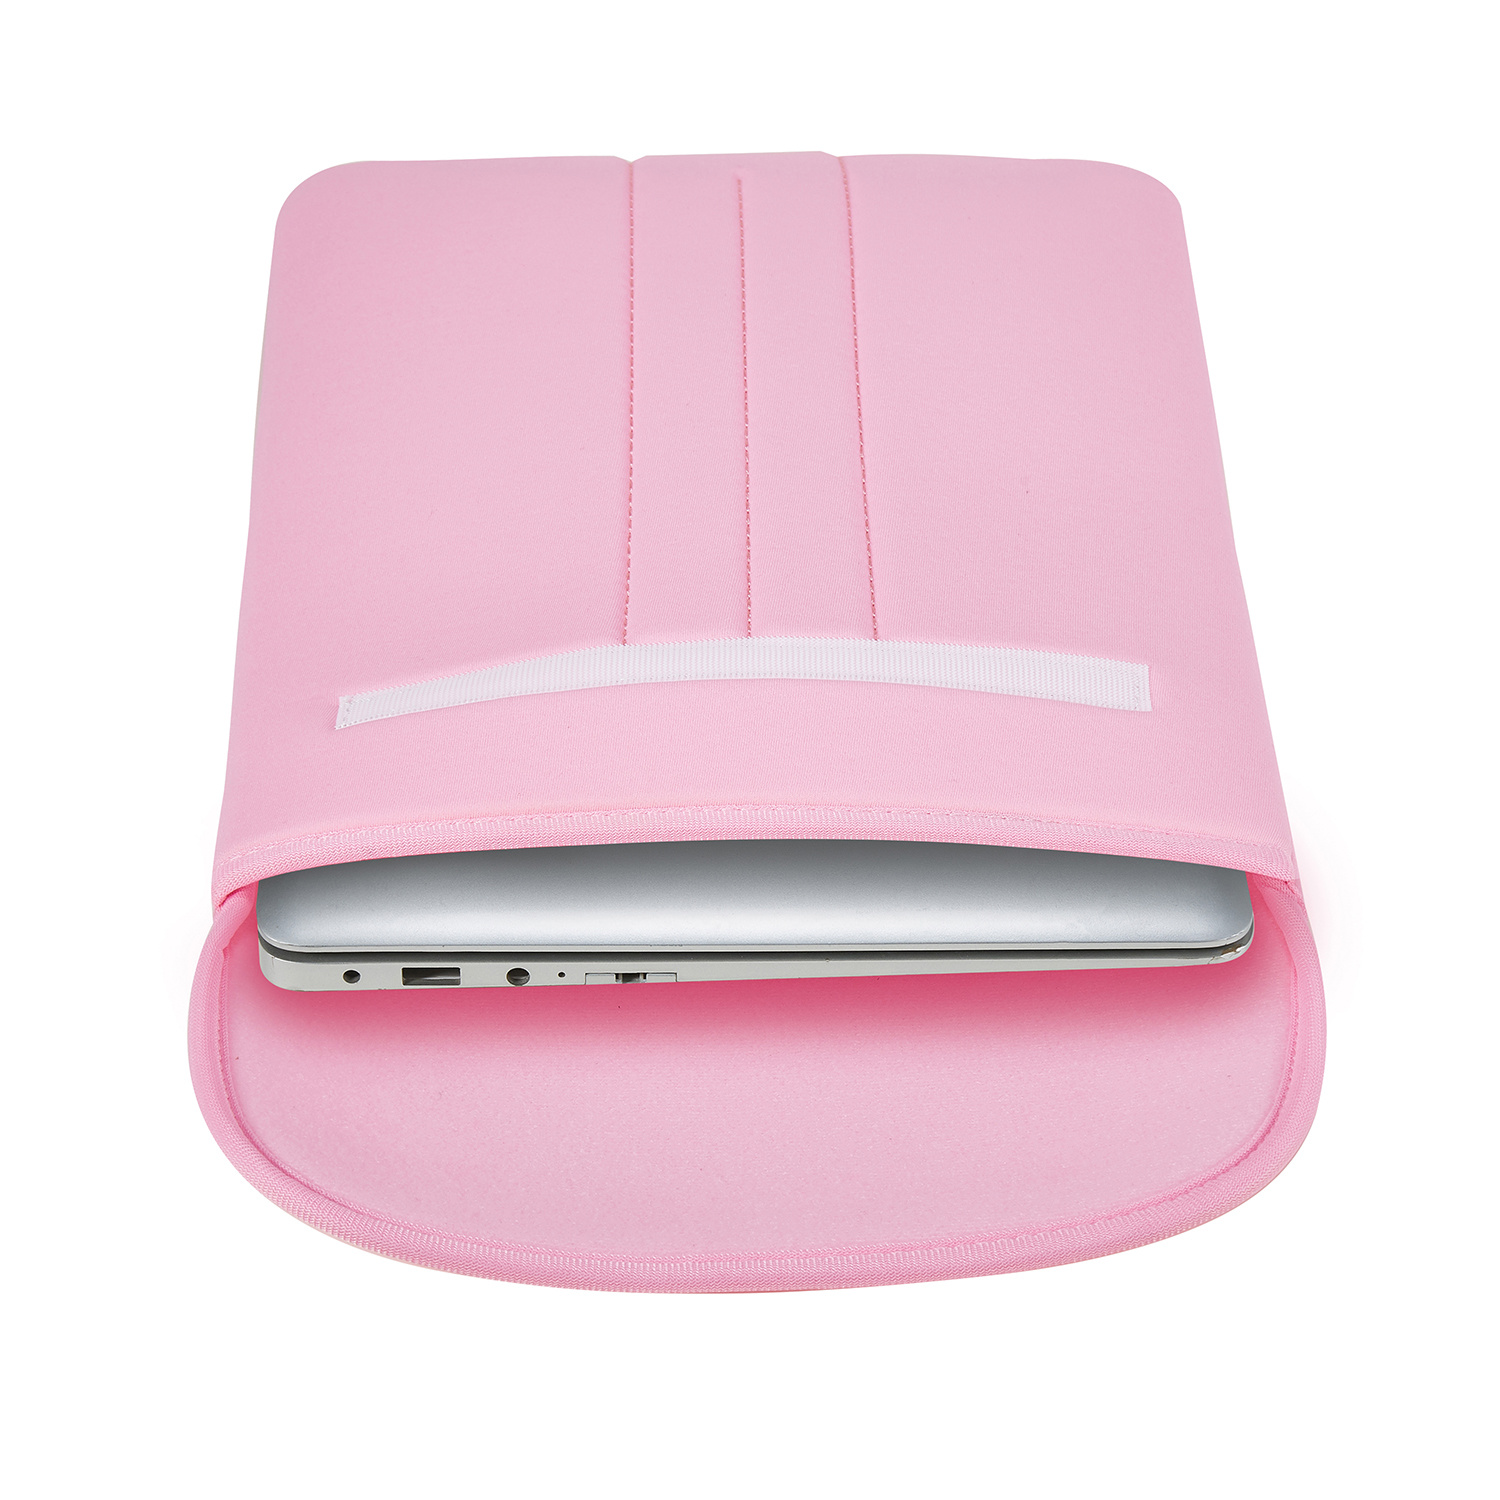 Kers verteren Decimale Case2go Laptop Sleeve - Laptophoes geschikt voor Macbook, Laptop en  Chromebook - 16 inch / 17.3 inch - Roze | Case2go.nl